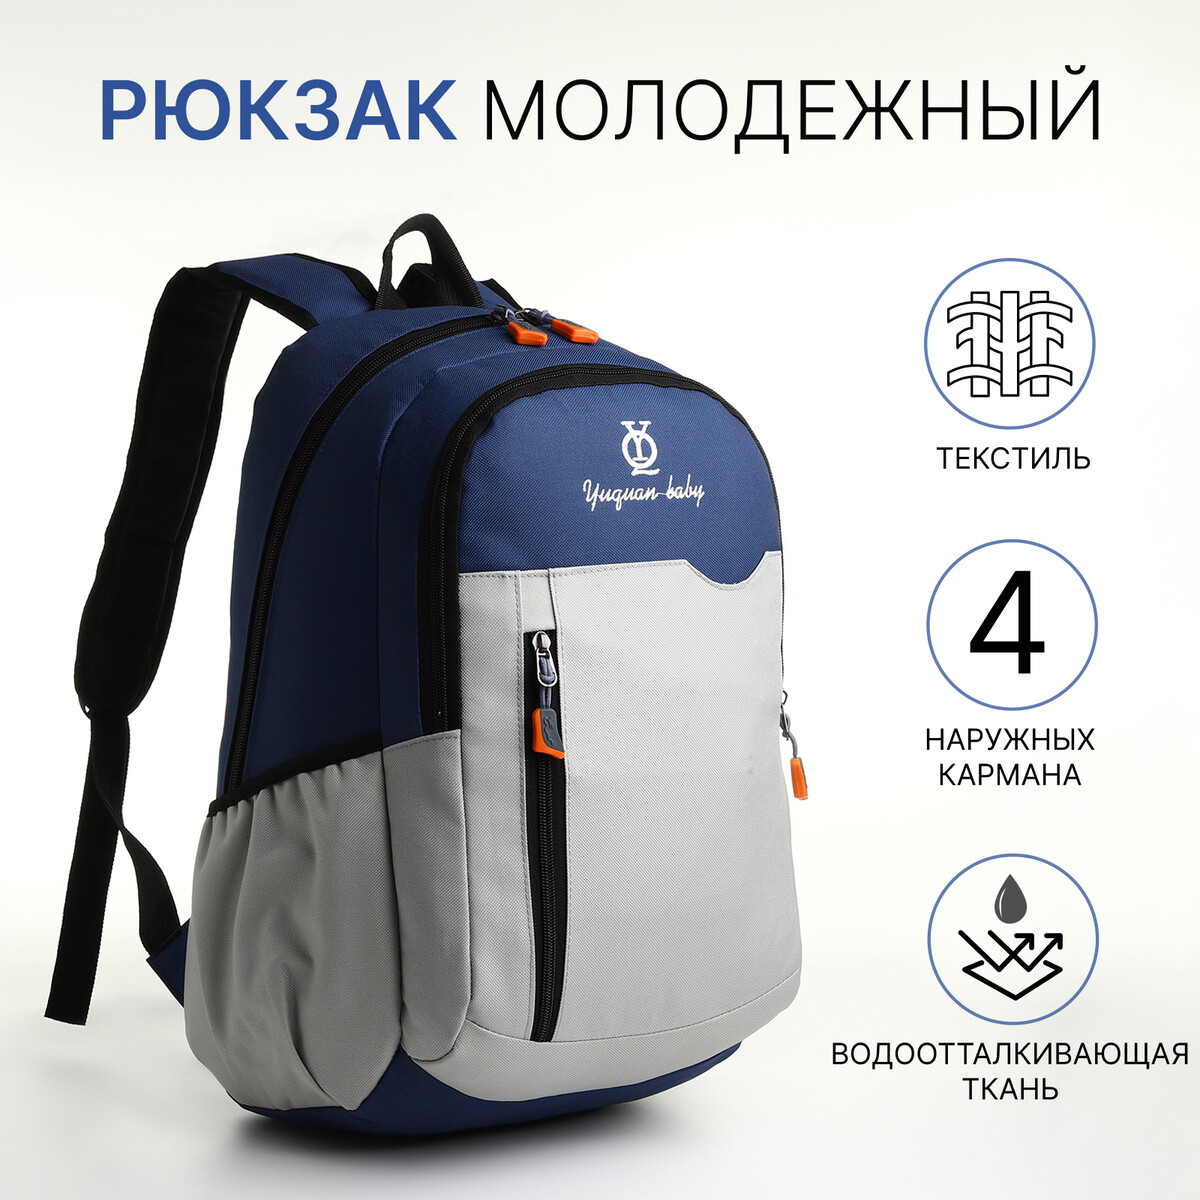 Рюкзак школьный, 2 отдела на молнии, 3 кармана, цвет серый/синий рюкзак школьный из текстиля на молнии 4 кармана серый